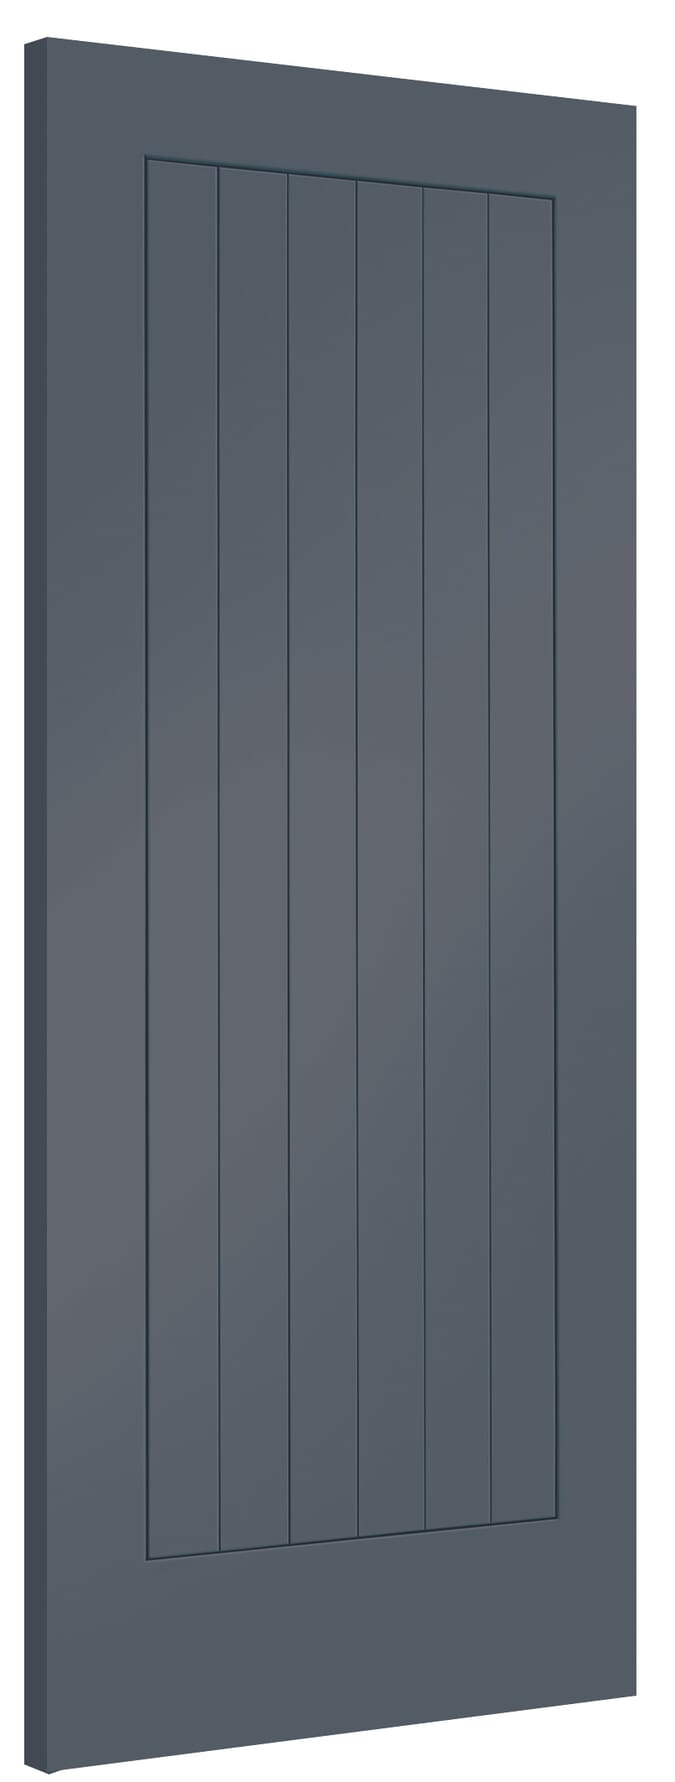 626x2040x40mm Suffolk Cinder Grey Internal Doors